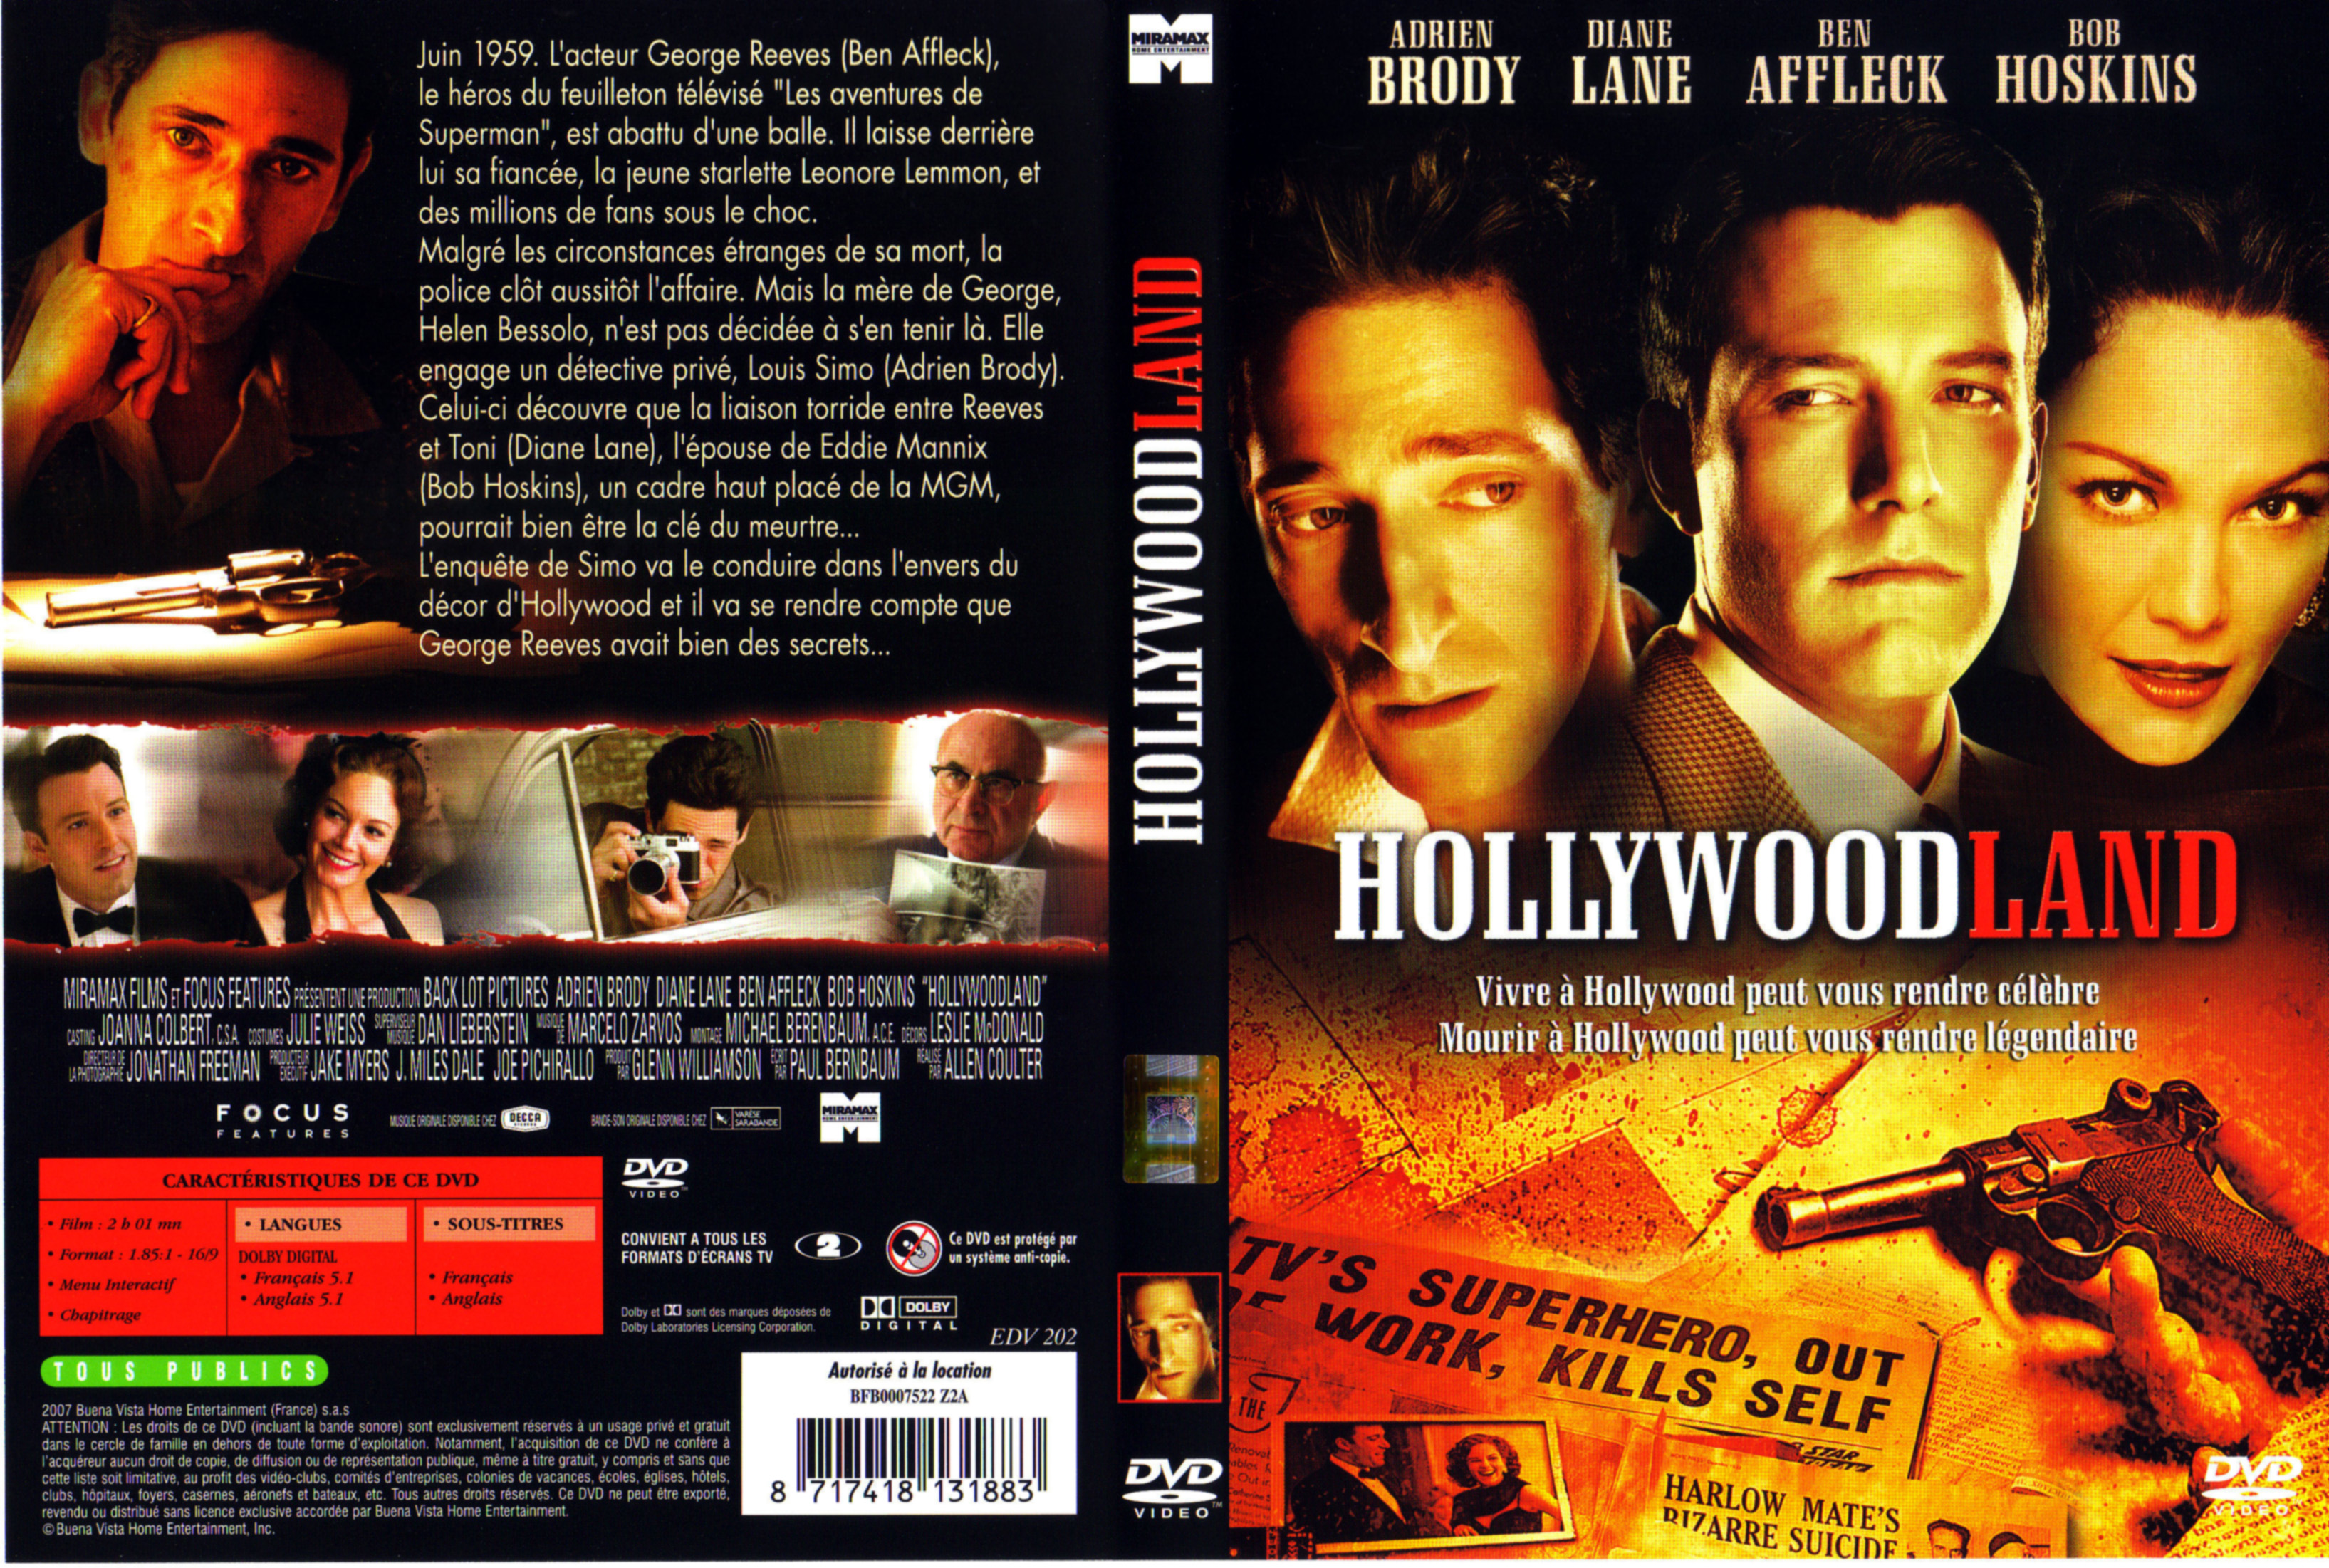 Jaquette DVD Hollywoodland v2